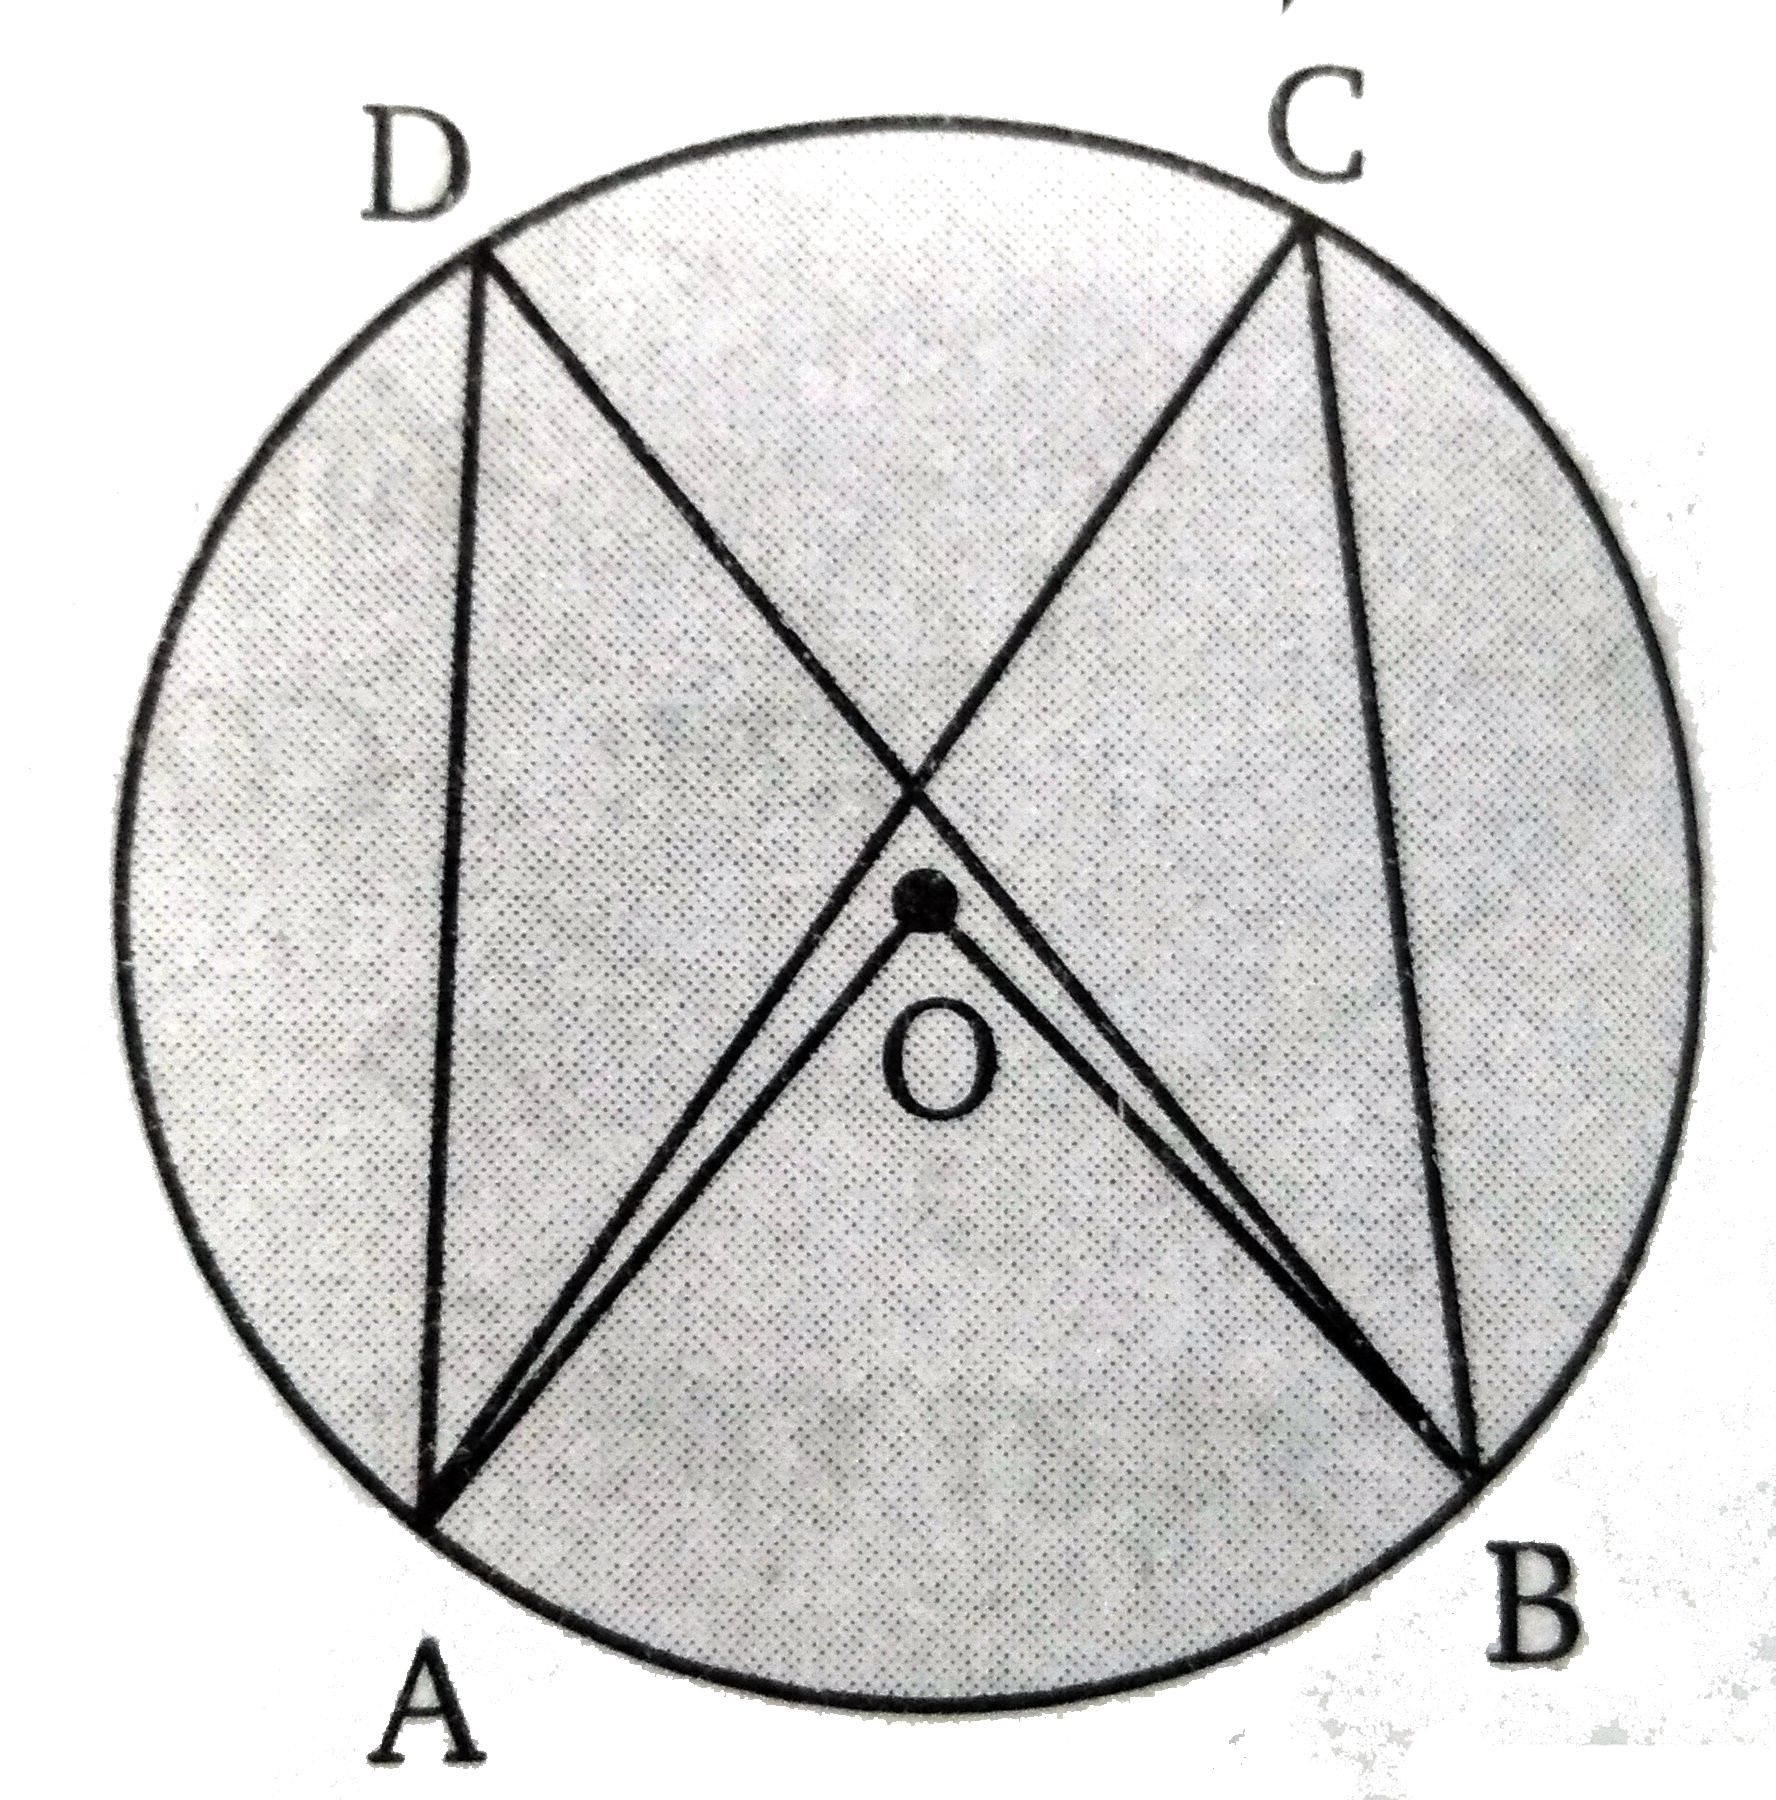 चित्र में, O वृत्त का केन्द्र है तथा angle ACB  व angle ADB  समान वृत्तखण्ड के कोण हैं तब angle ADB  व angle ACB  में सम्बन्ध ज्ञात कीजिए